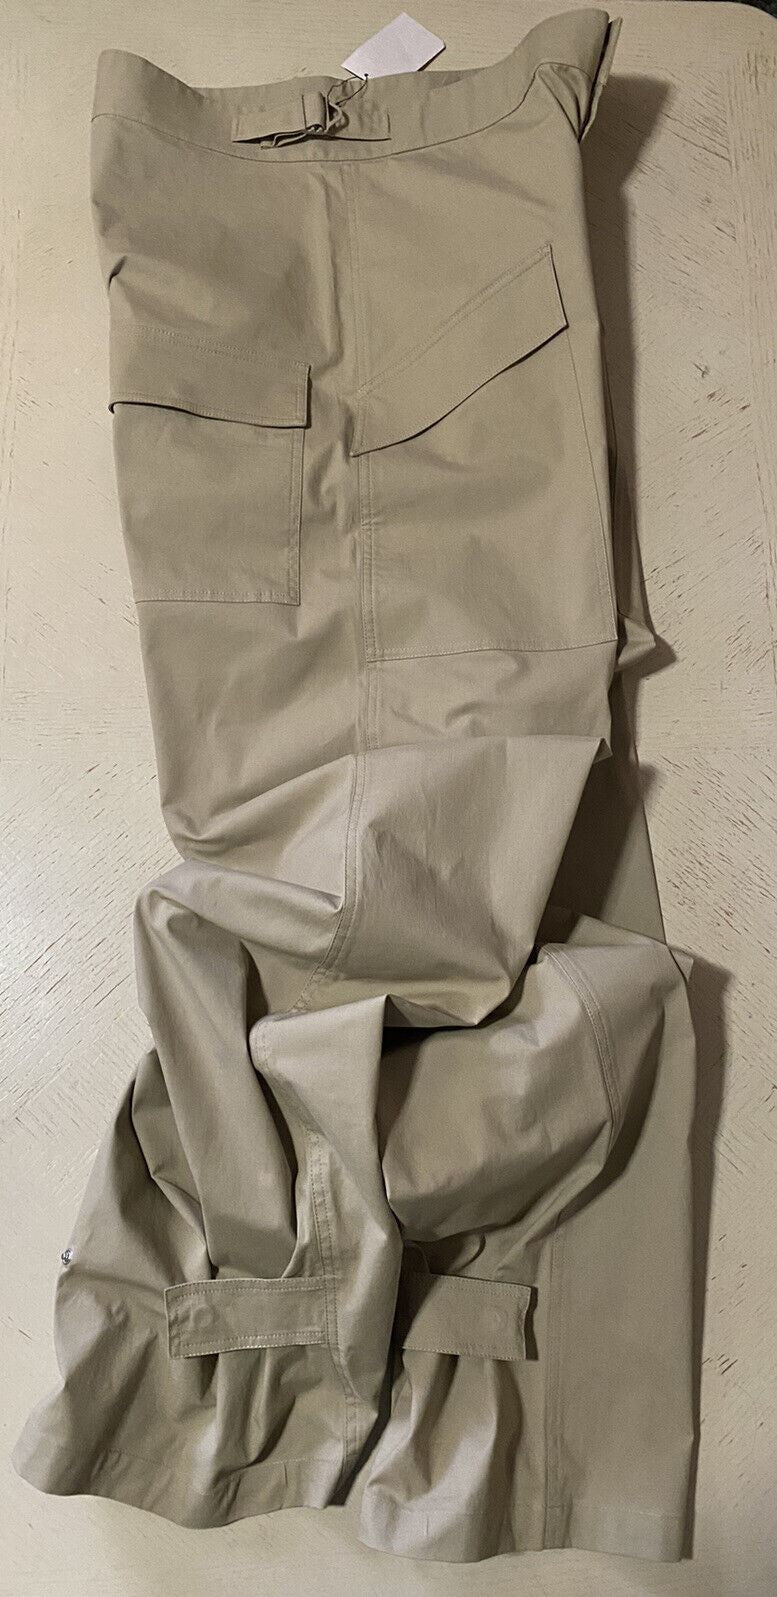 СЗТ $890 Мужские брюки из легкого хлопка стрейч Bottega Veneta песочного/LT коричневого цвета 34 US/50 E